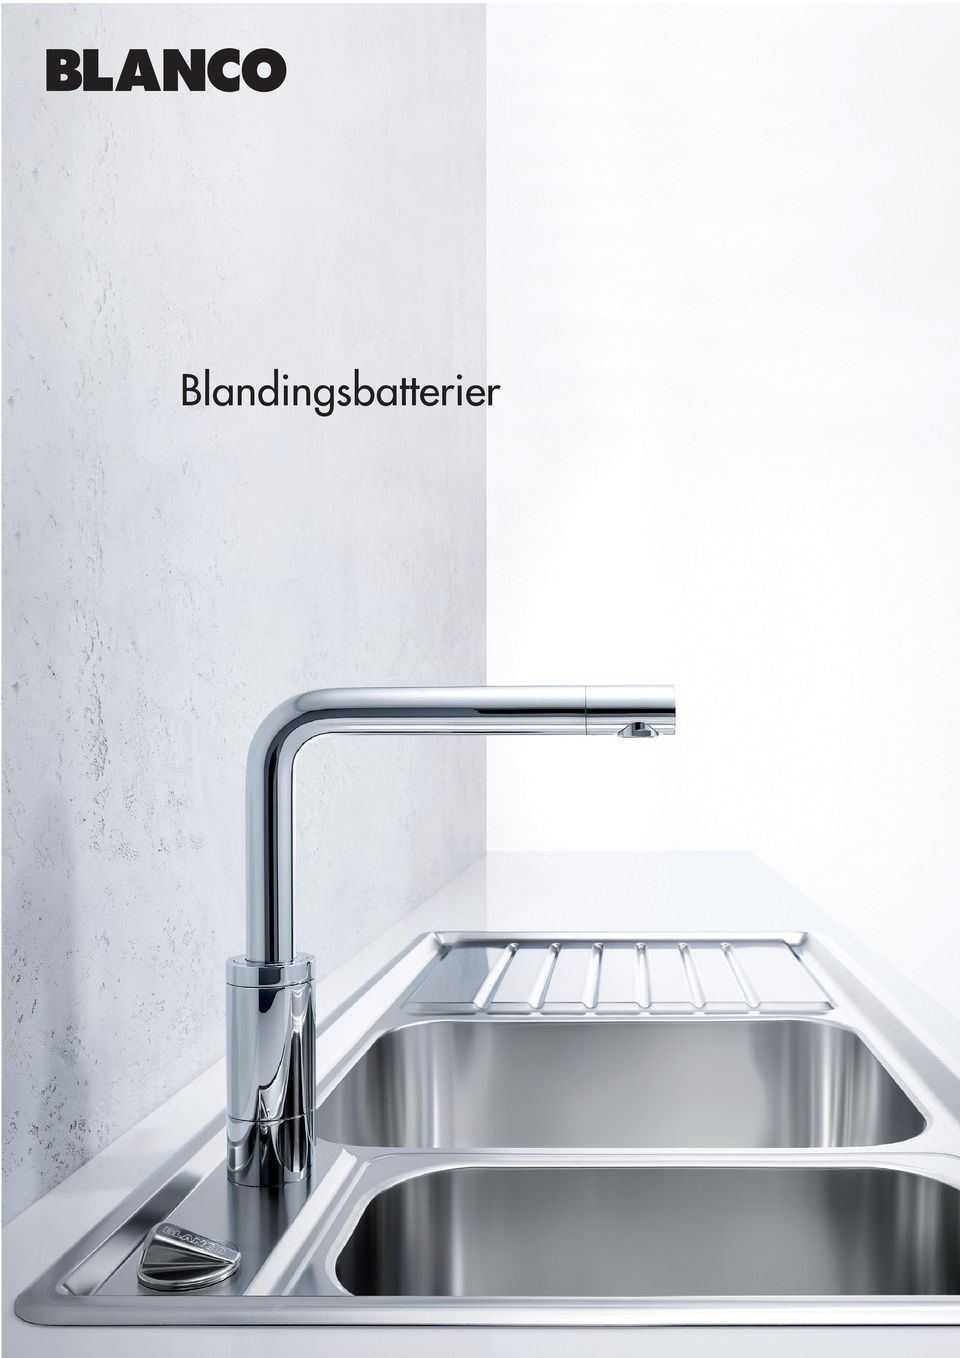 BLANCO 2009/10. STEELART, køkkenvaske, blandingsbatterier, affaldssystemer  og tilbehør. - PDF Free Download